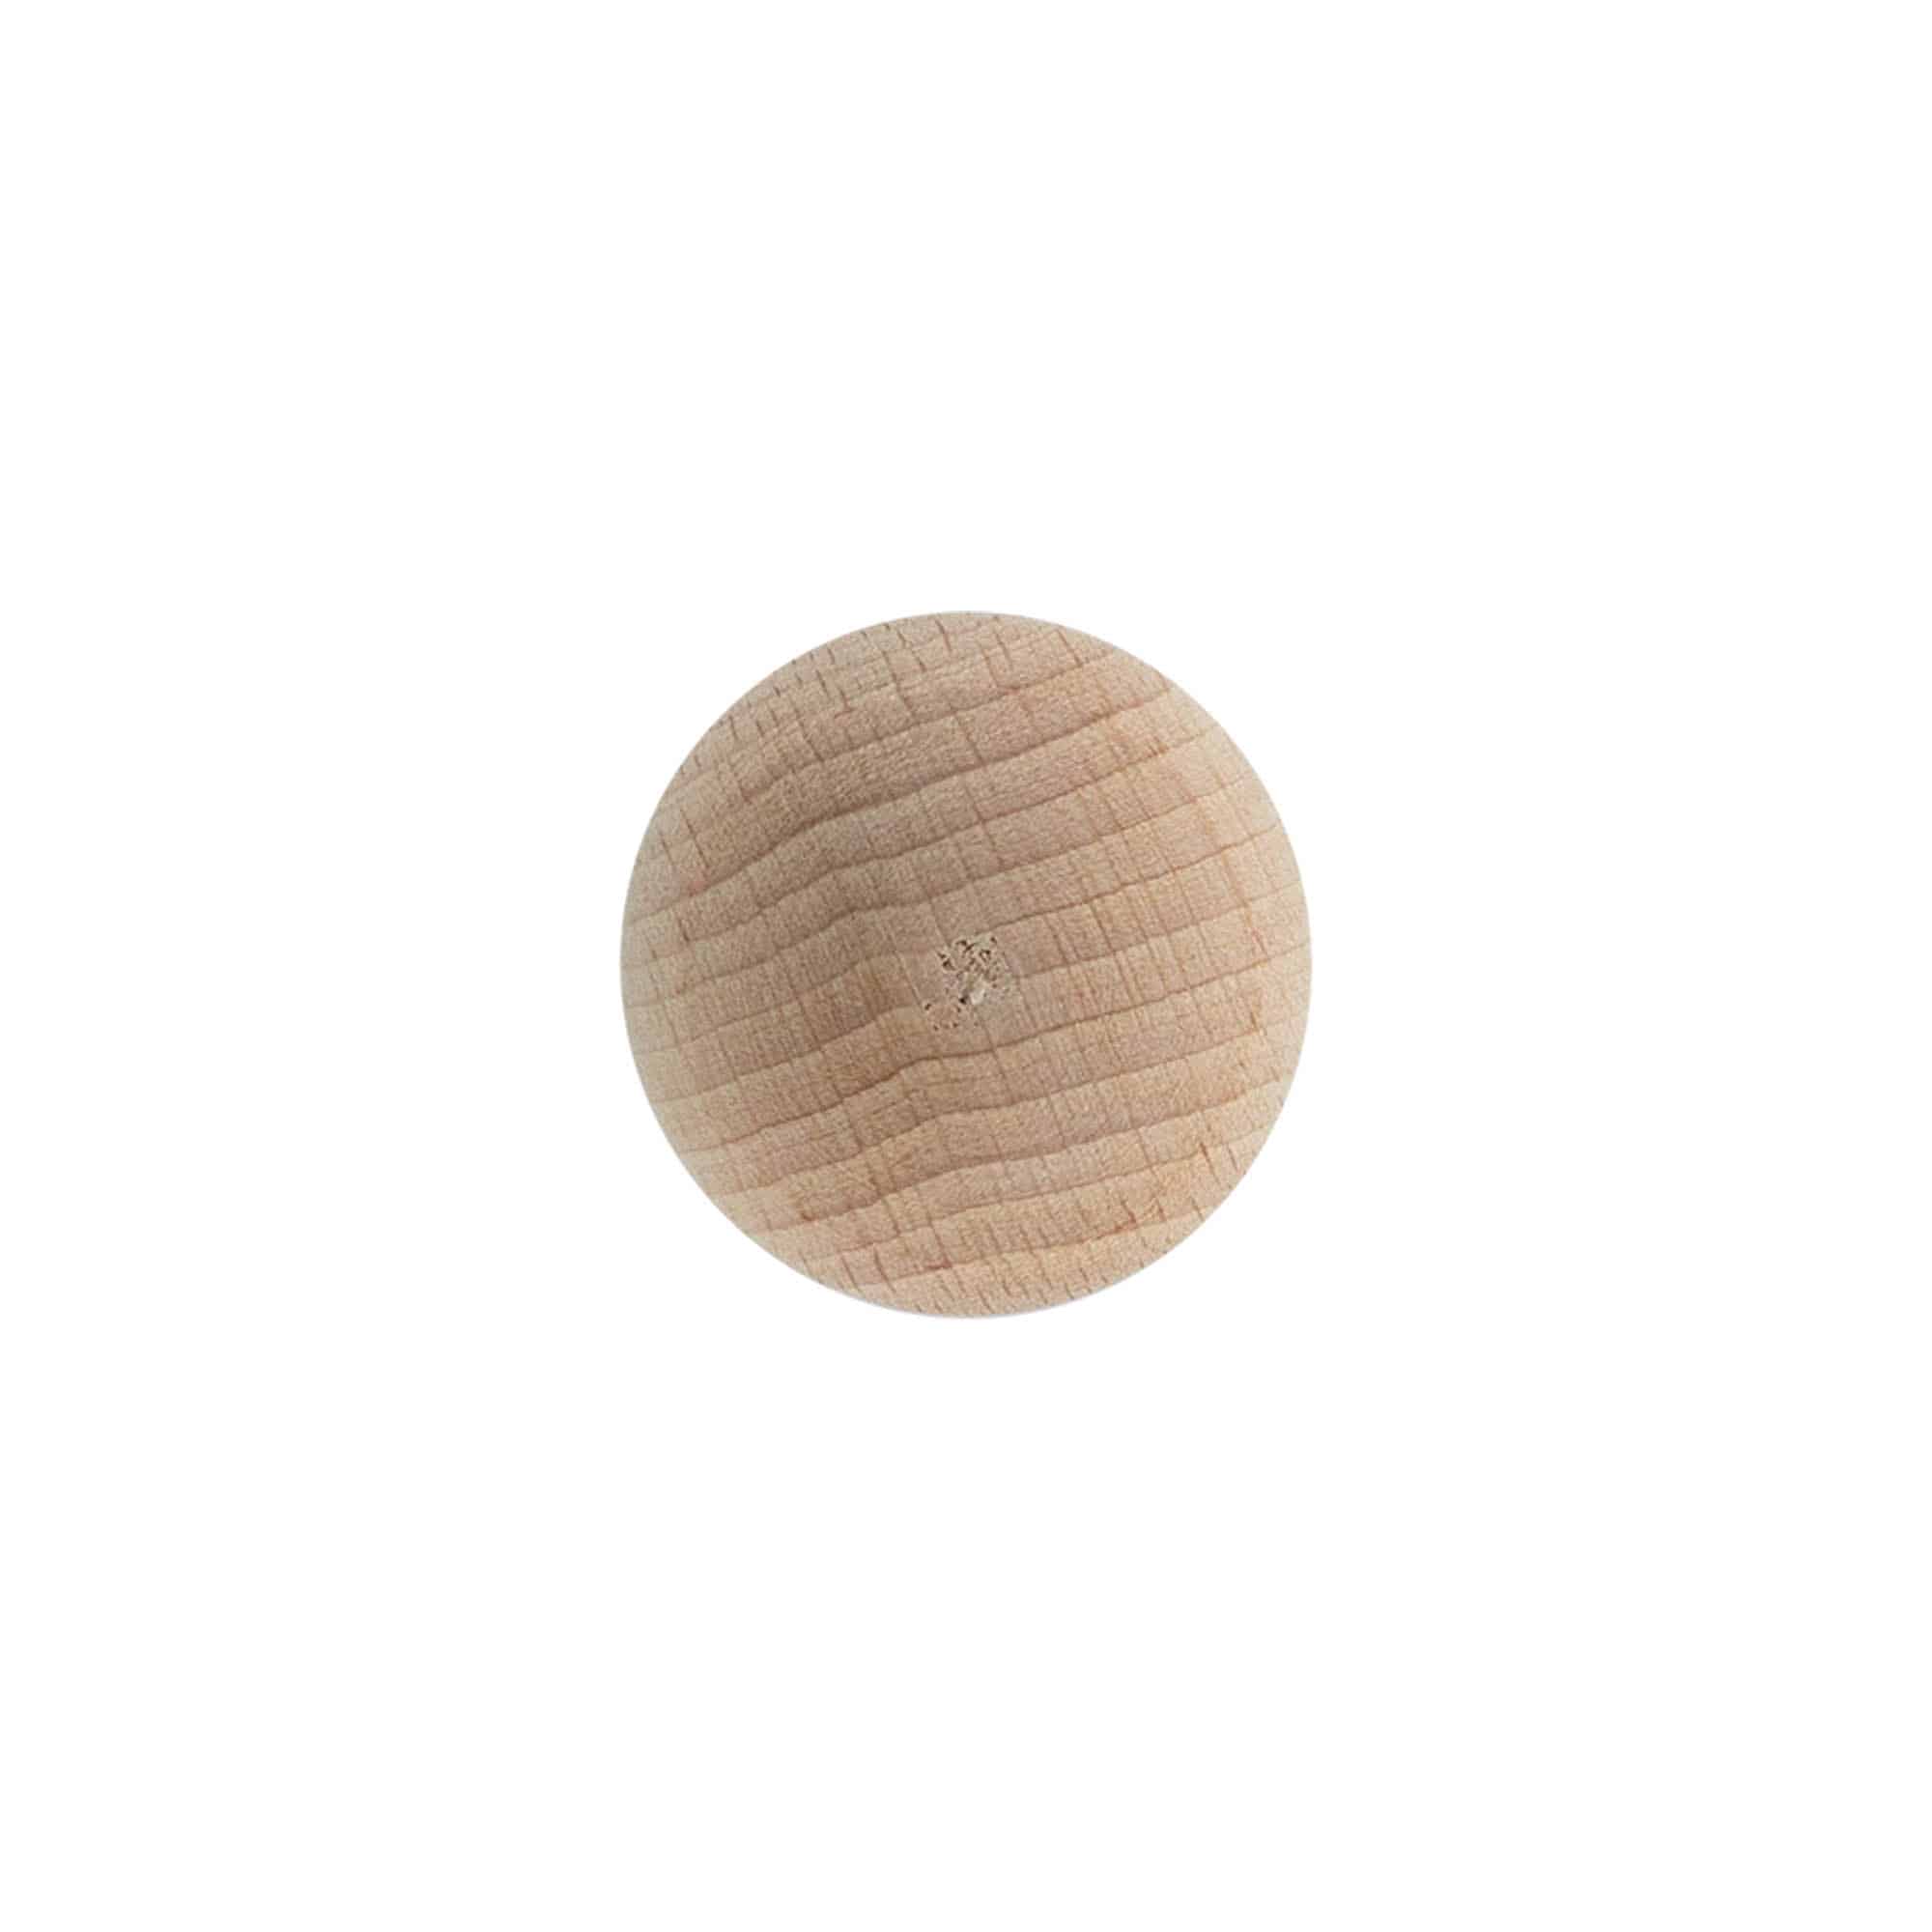 Korek s úchytem 19 mm 'Koule', dřevo, pro uzávěr: korek